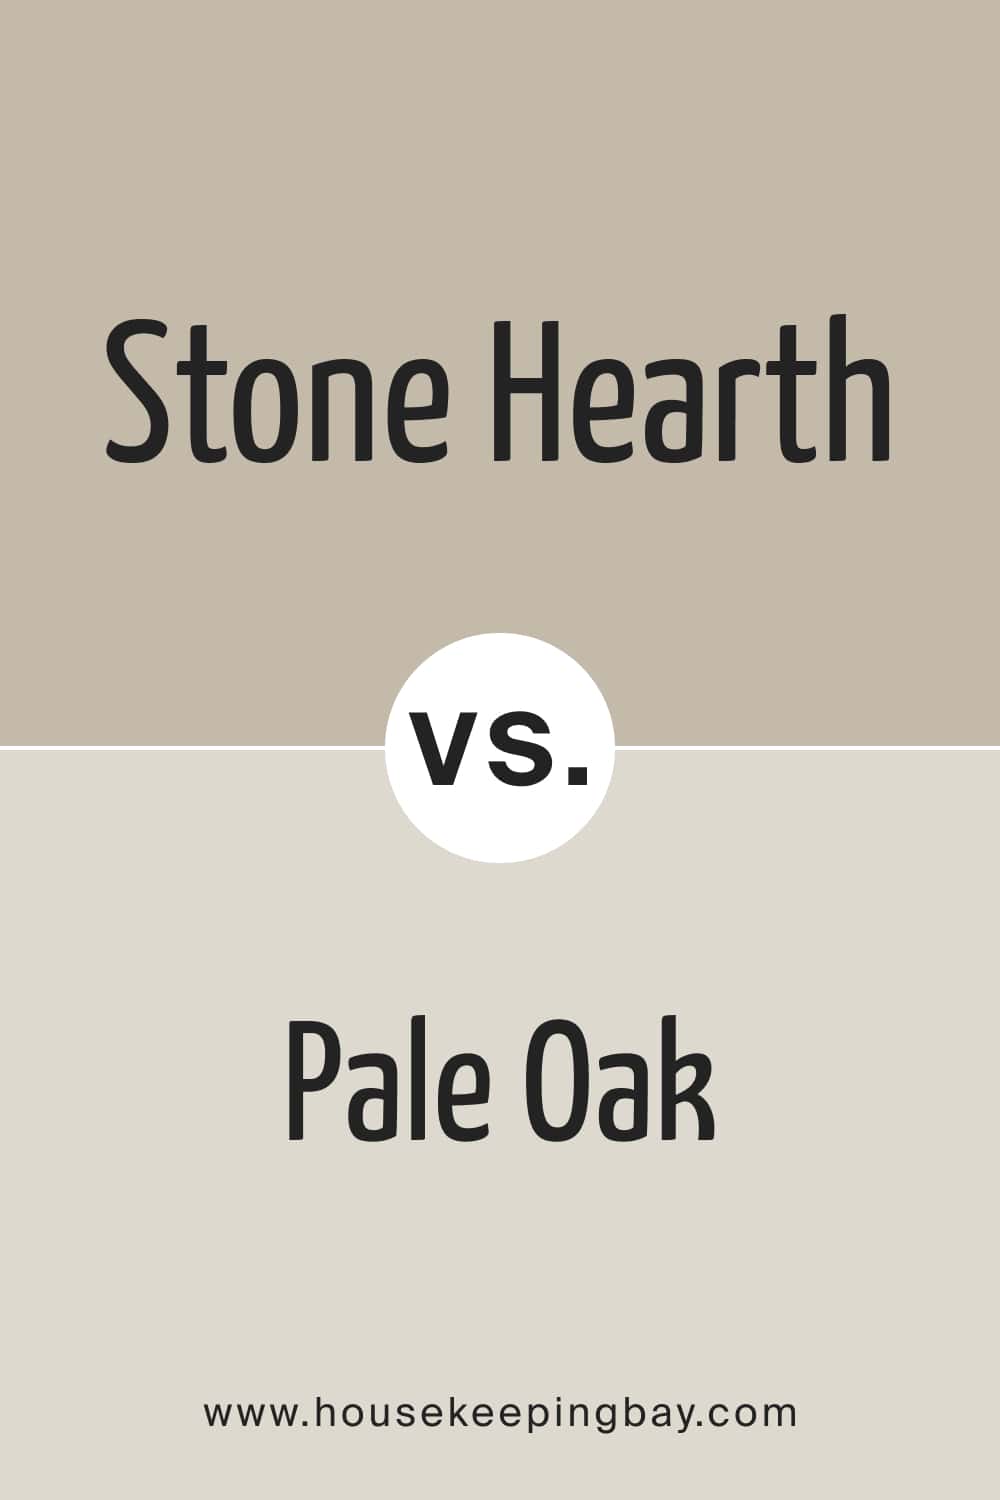 Stone Hearth vs Pale Oak